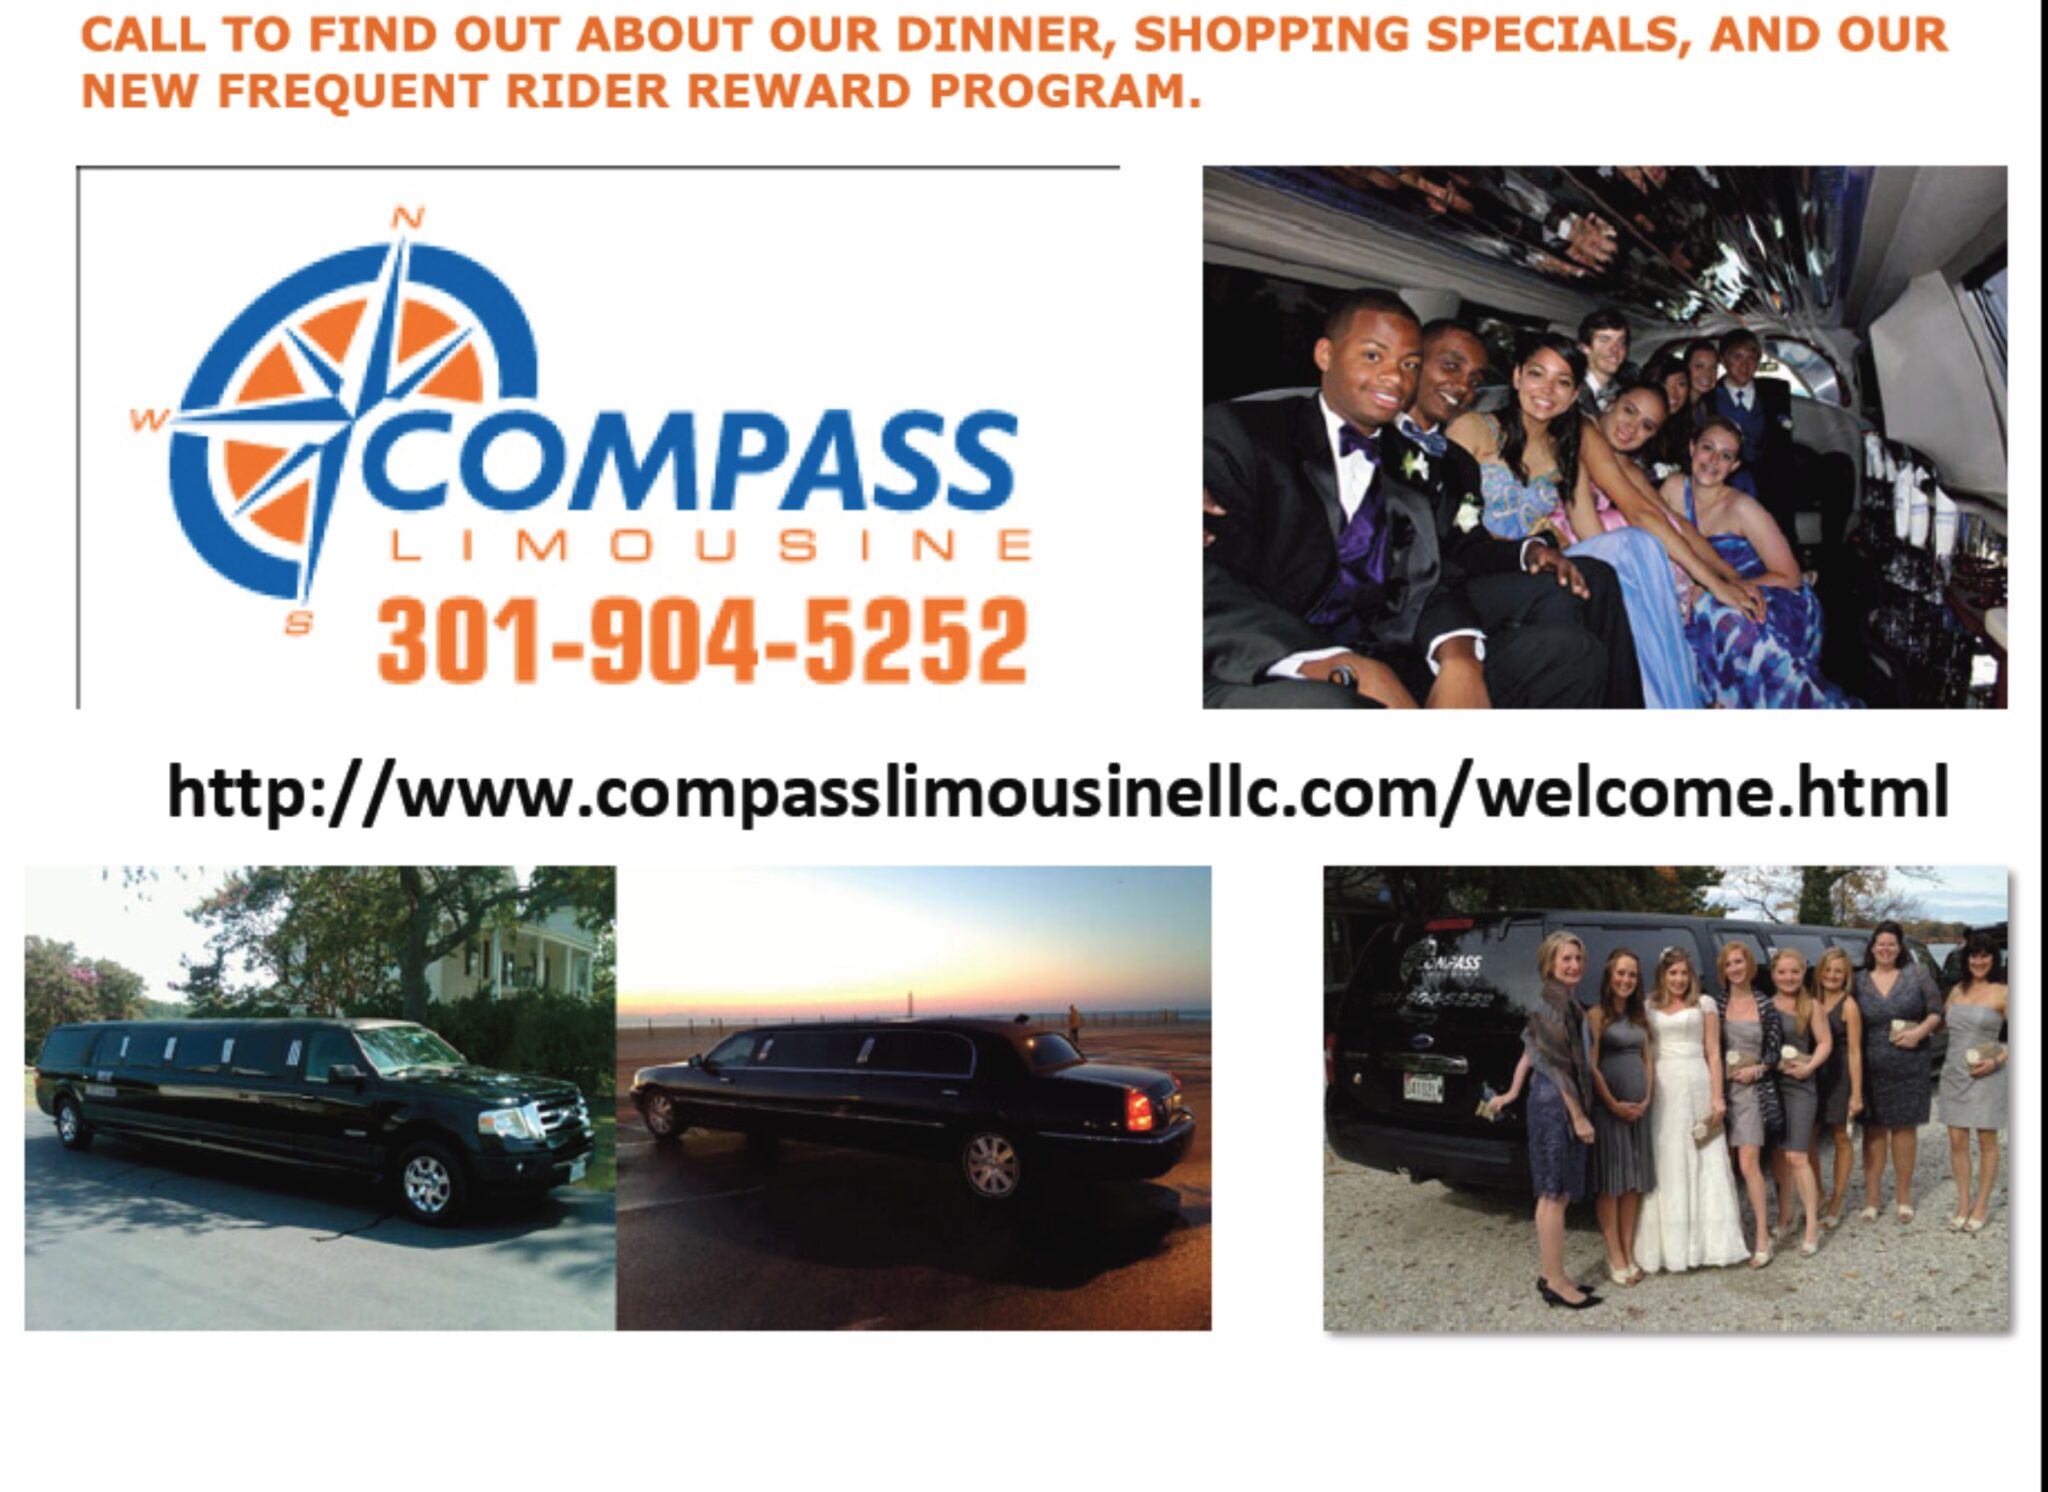 Compass limo ad April 2013